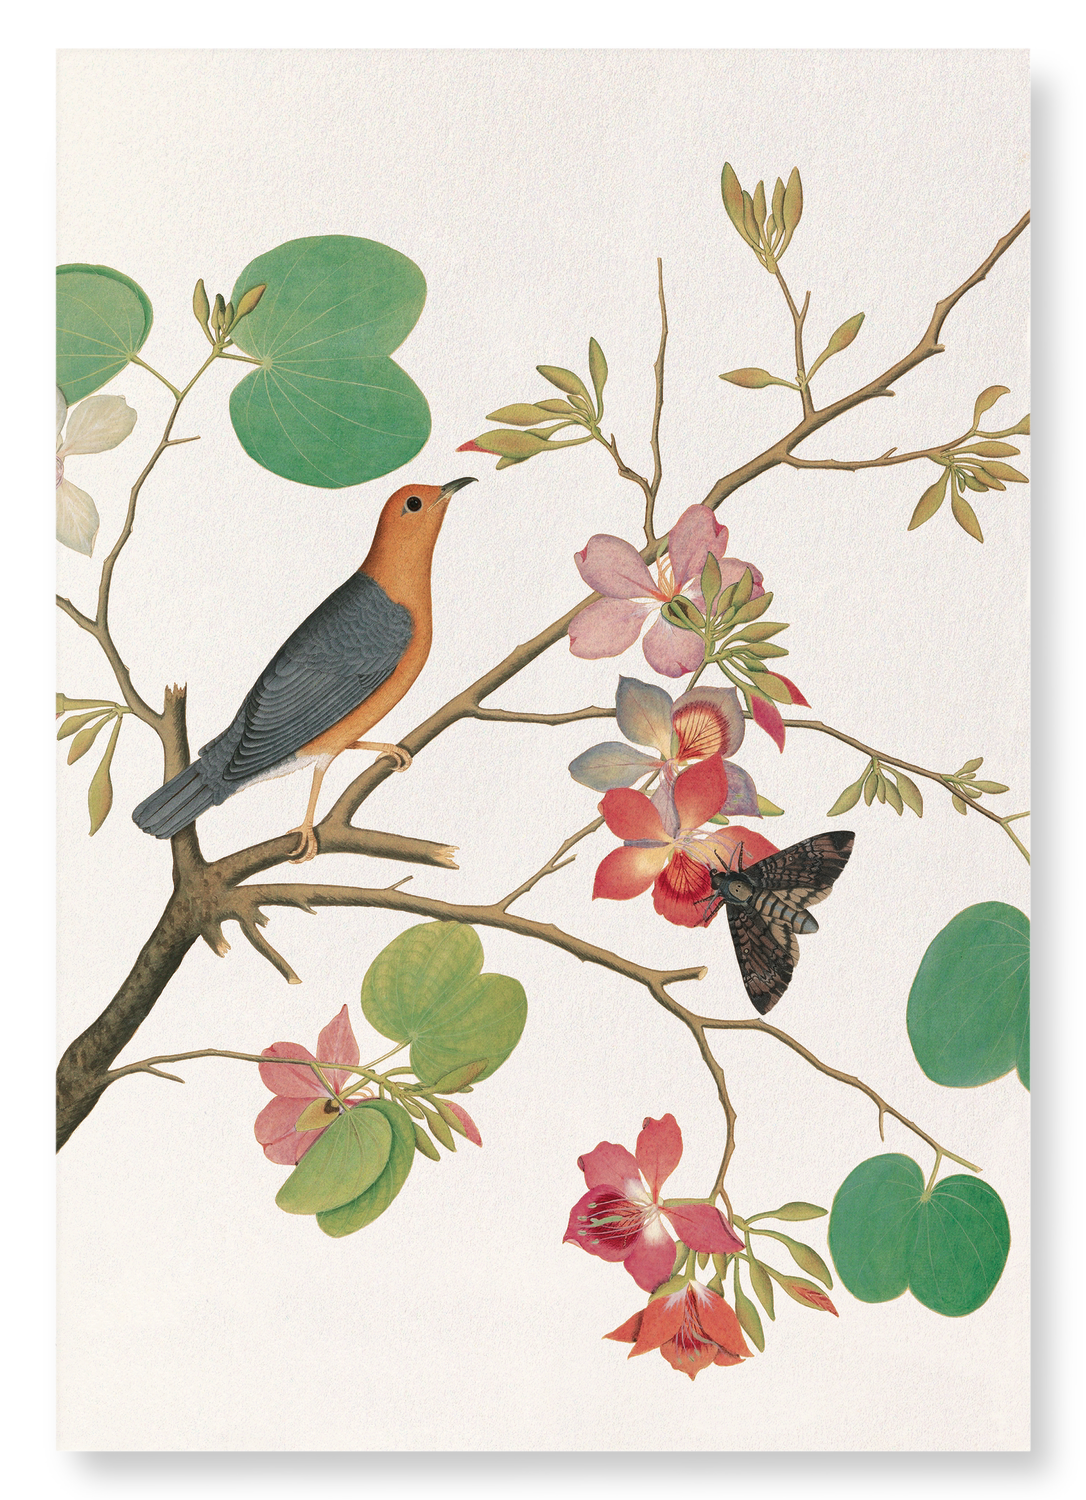 ORANGE BIRD ON ORCHID BRANCH (1778)